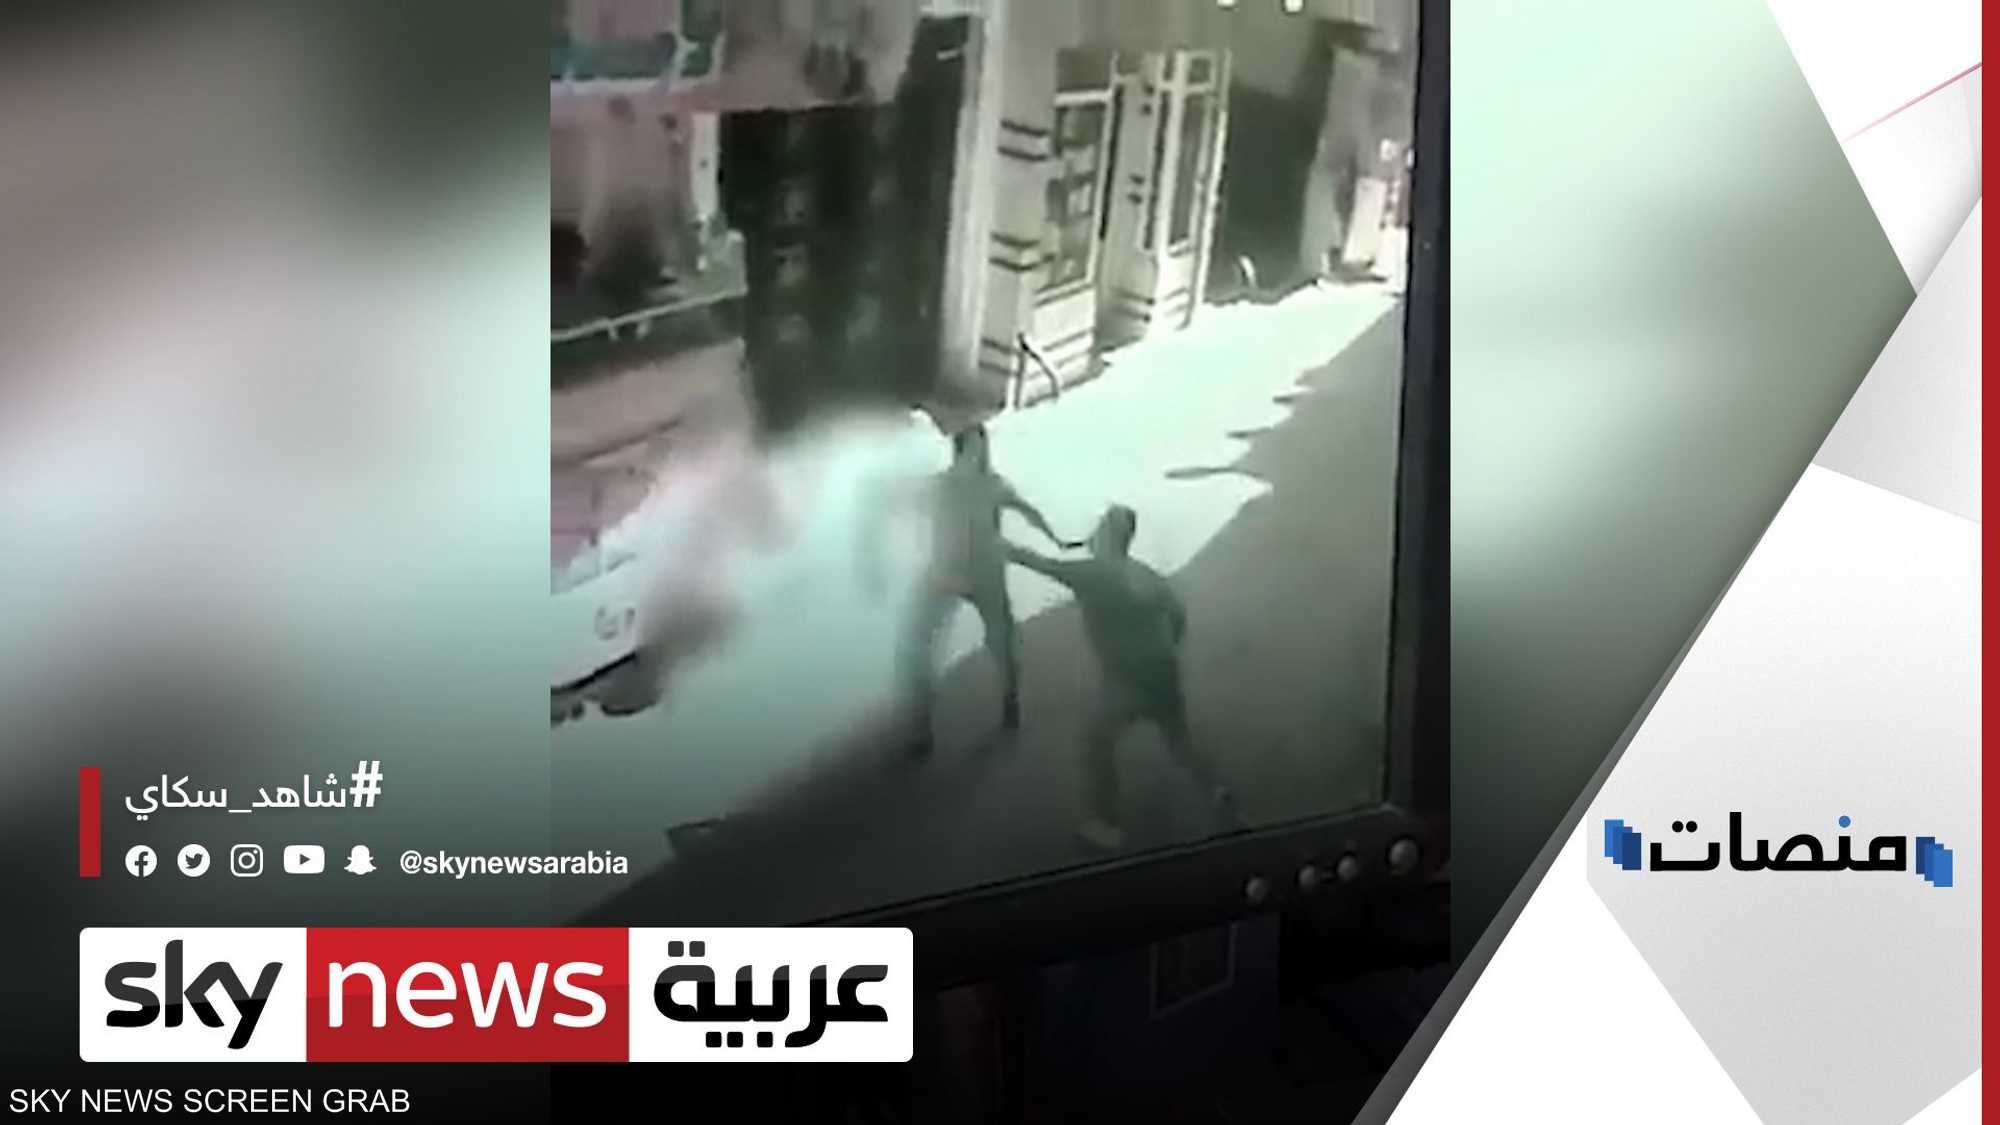 القبض على رجل قتل آخر بساطور وسط المارة في مصر